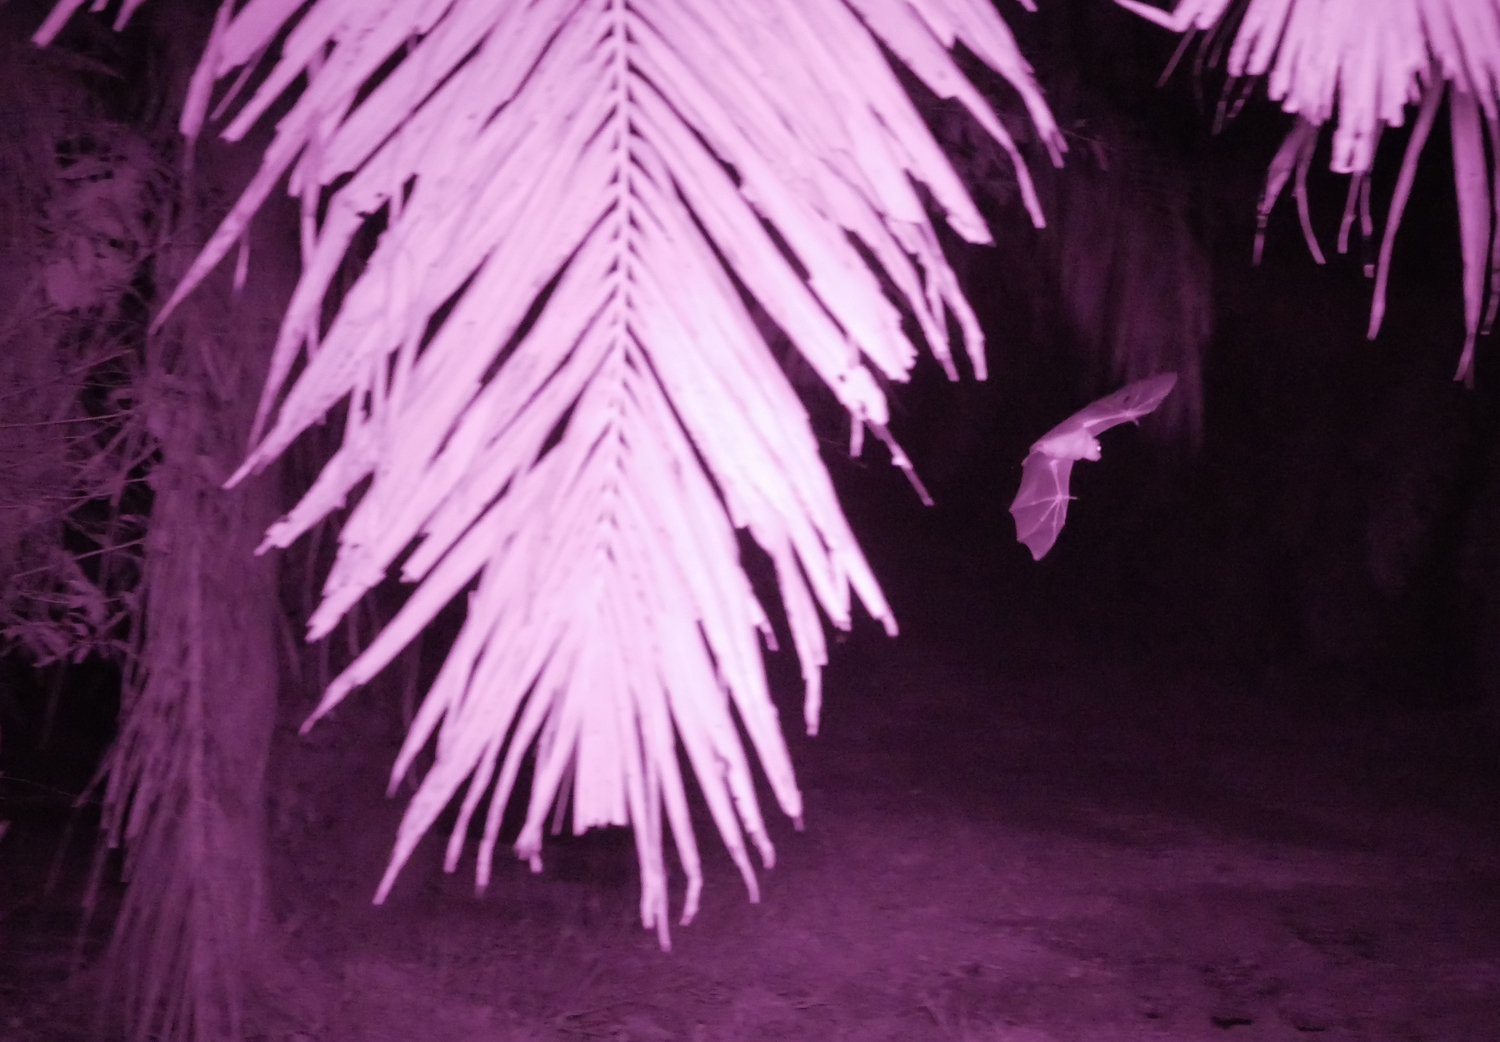 Nahinfrarotaufnahme einer Kleinen Kurznasenfledermaus (Cynopterus brachyotis) auf dem Weg durch eine Ölpalmenplantage.